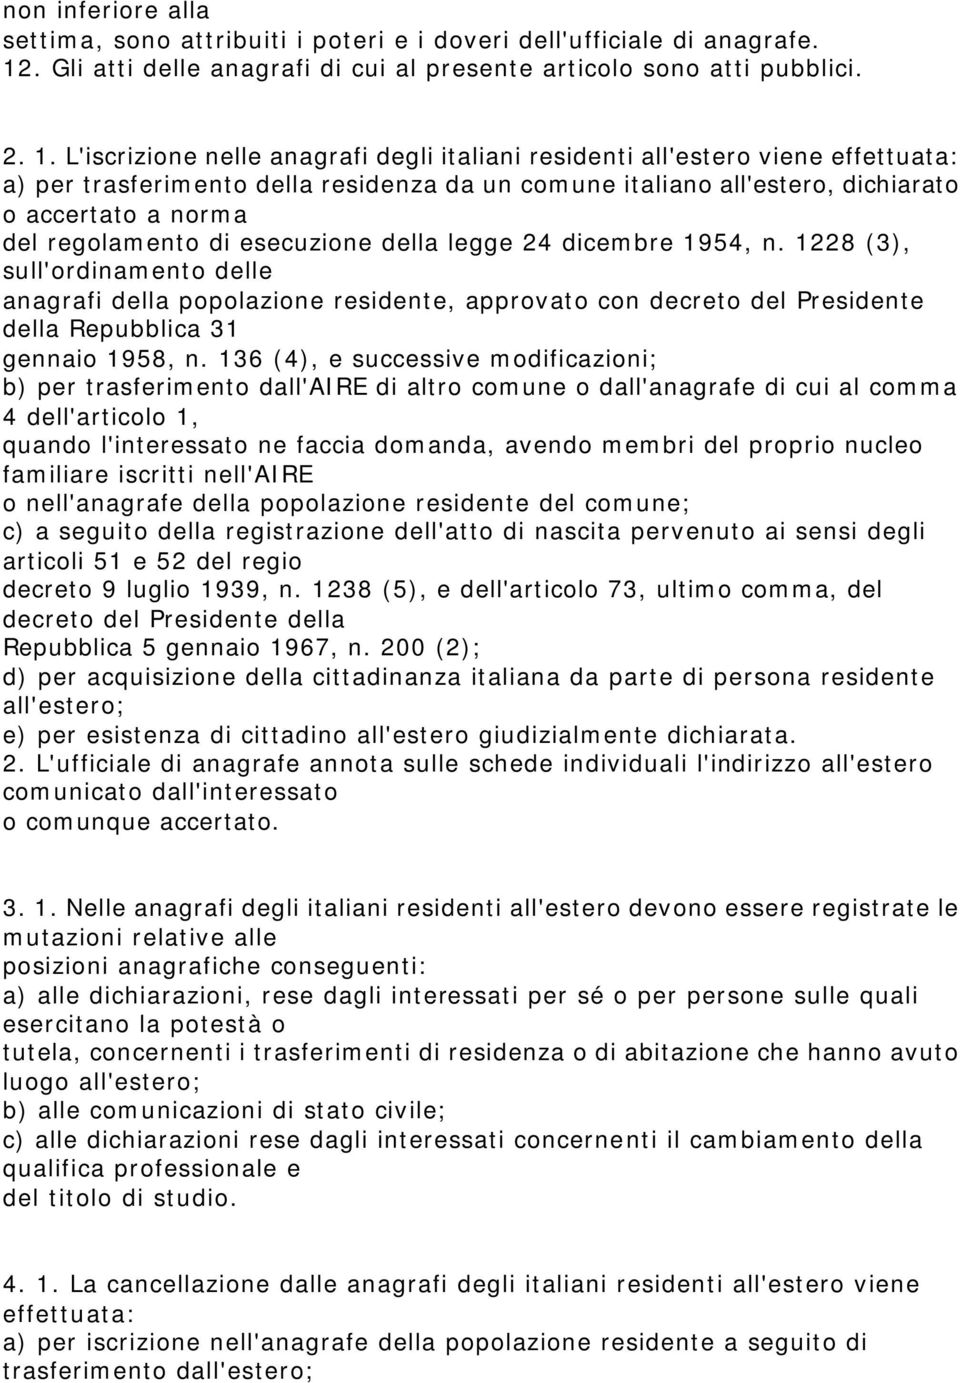 L'iscrizione nelle anagrafi degli italiani residenti all'estero viene effettuata: a) per trasferimento della residenza da un comune italiano all'estero, dichiarato o accertato a norma del regolamento